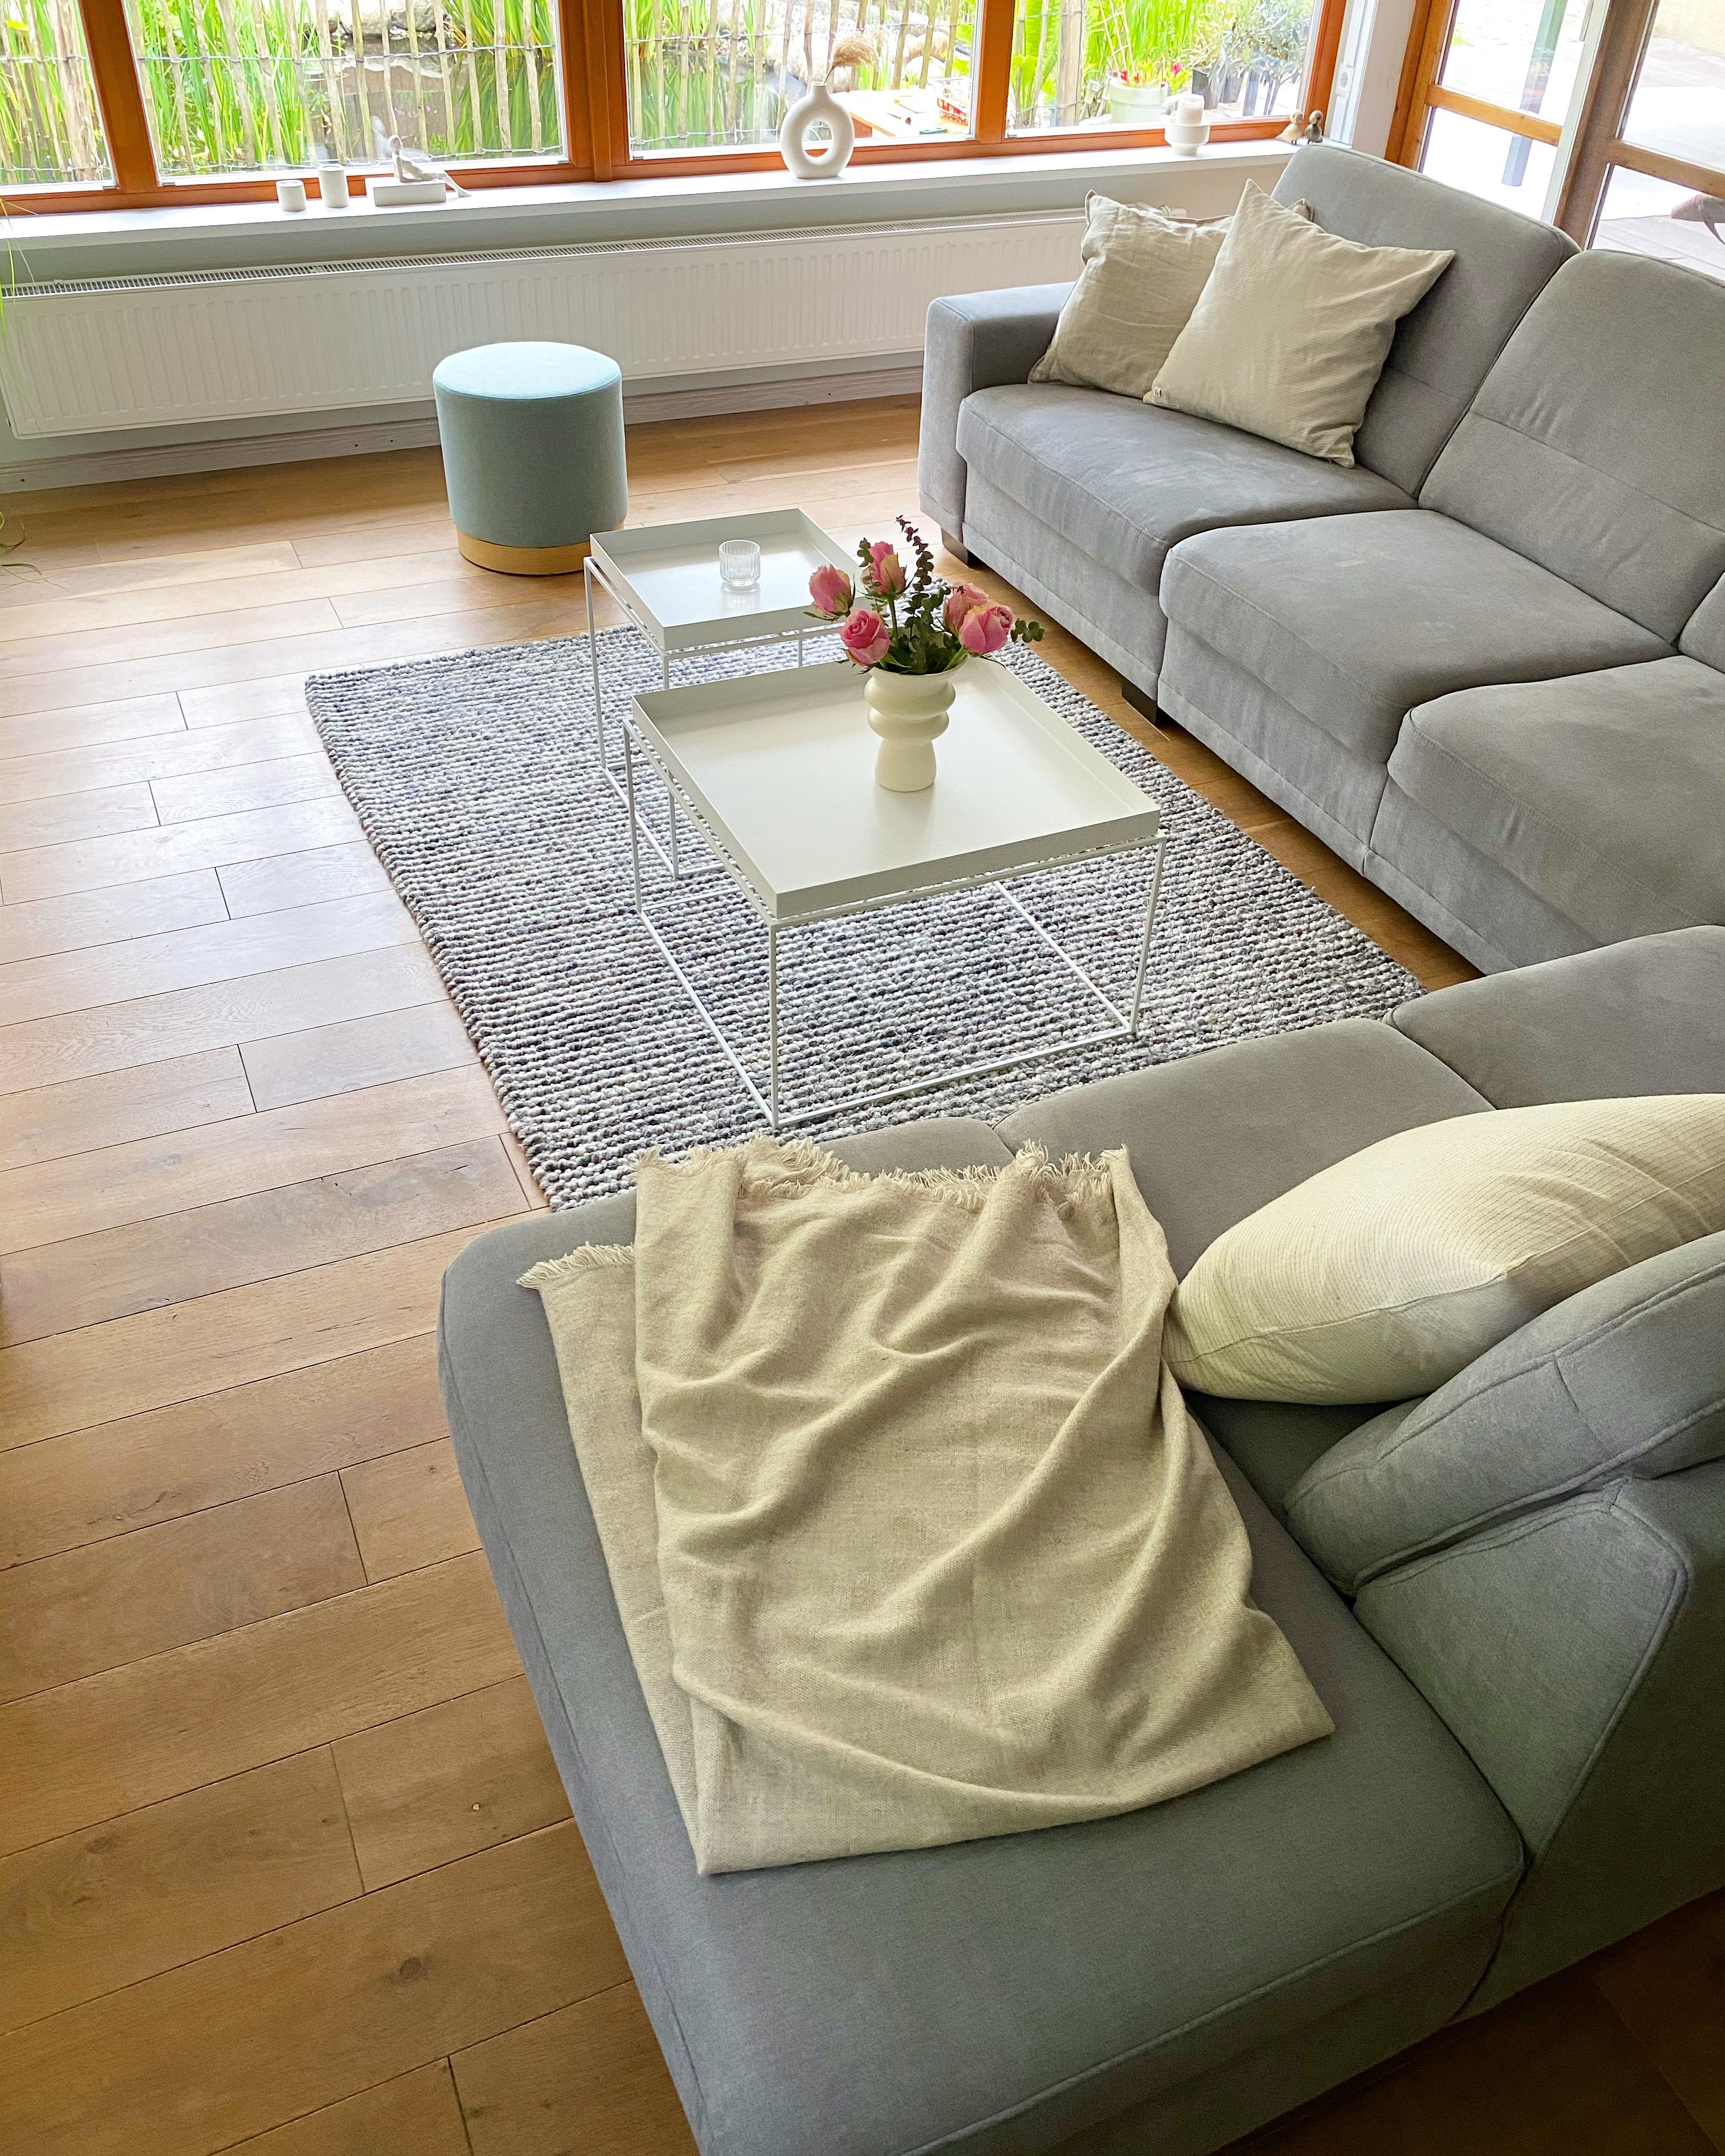 Hier wird es kuschelig #sofa #lieblingsplatz #wohnzimmer #blumendeko #skandinavischwohnen